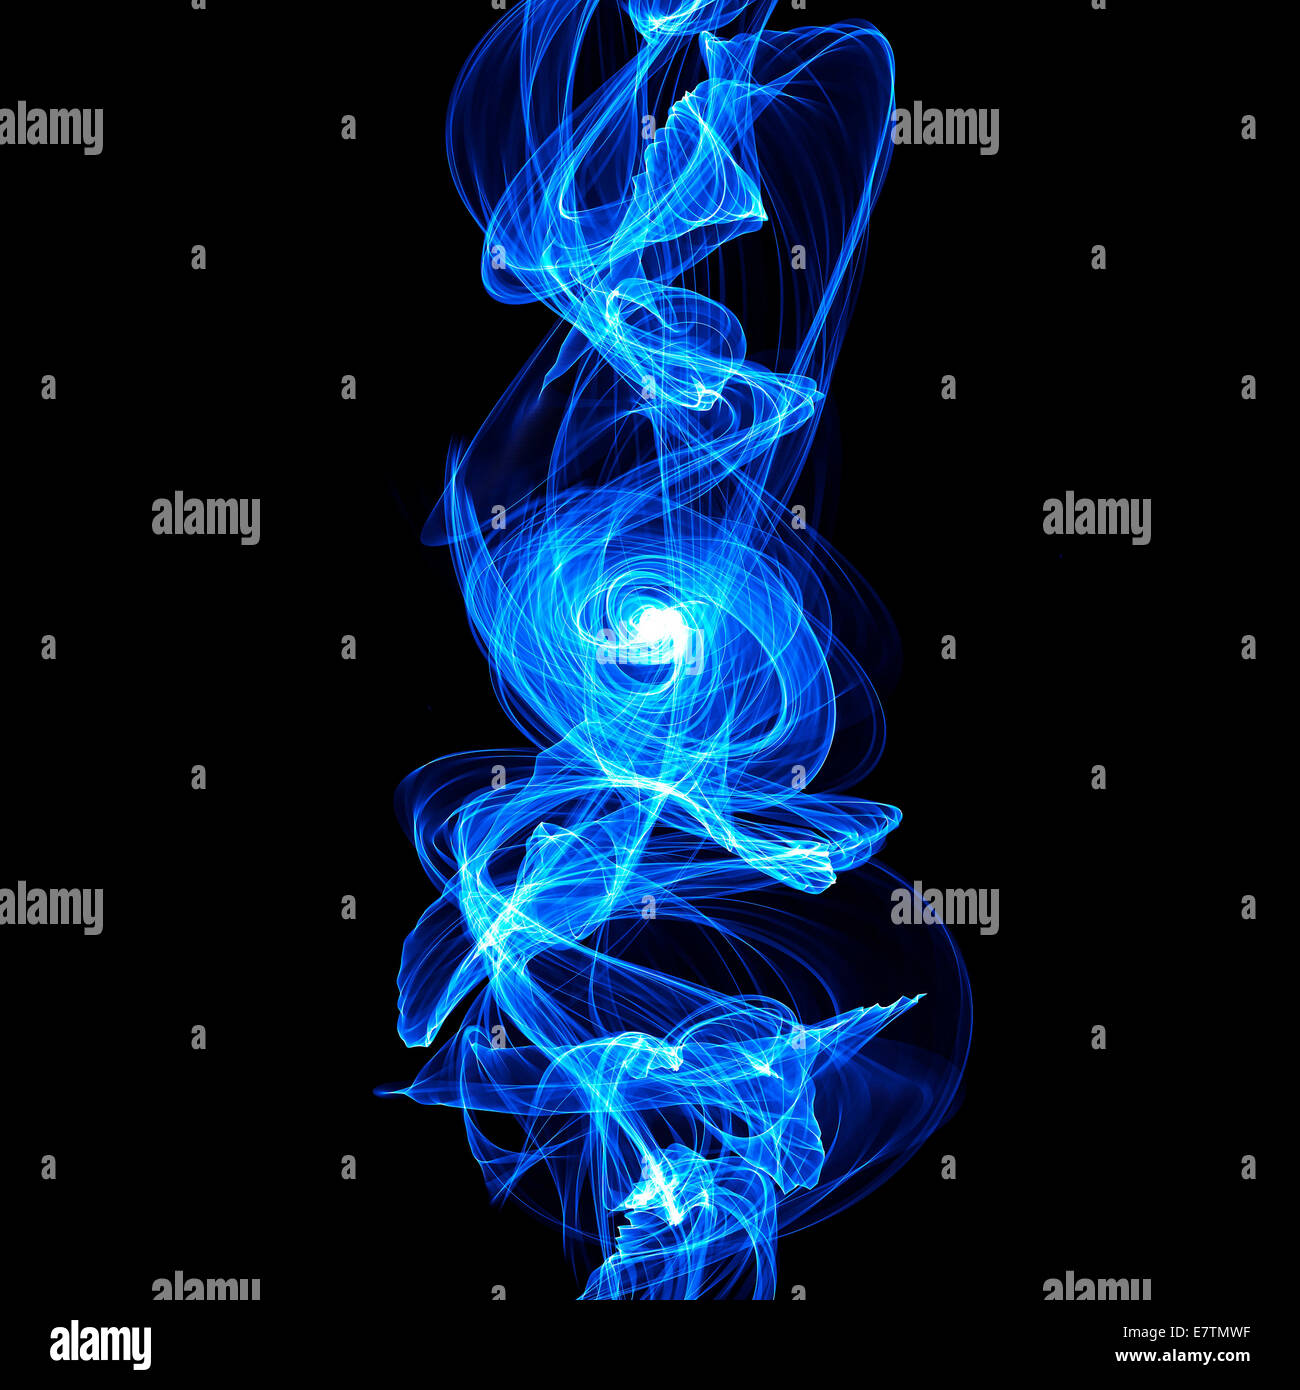 Motifs abstraits bleu sur fond noir, l'oeuvre de l'ordinateur. Banque D'Images